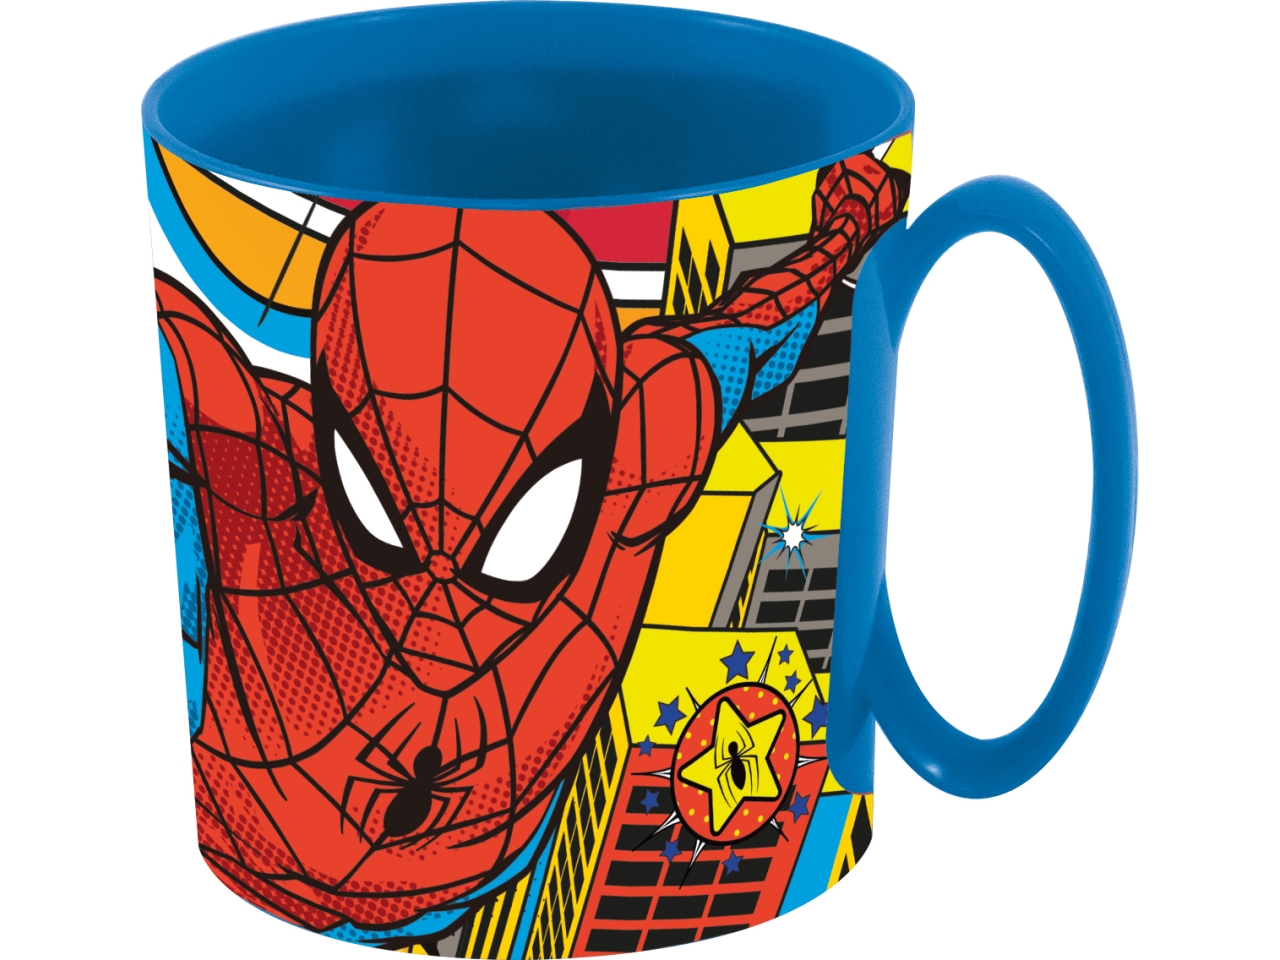 Spiderman mug da 390ml